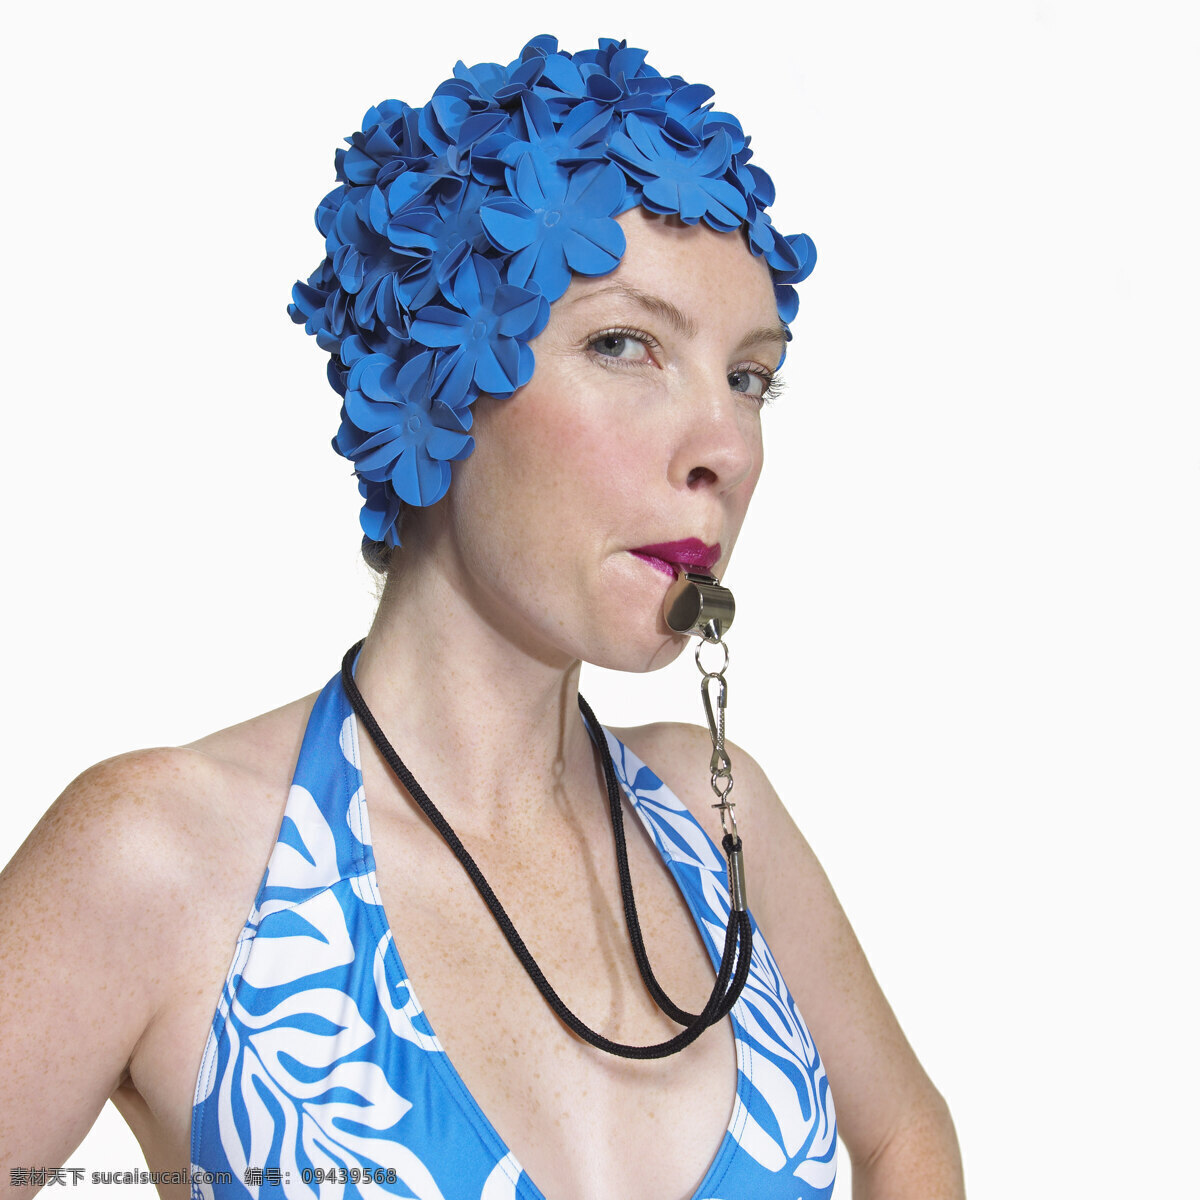 吹 口哨 游泳 教练 运动 人物 女性 比基尼 吹口哨 严肃表情 蓝色泳帽 影音娱乐 生活百科